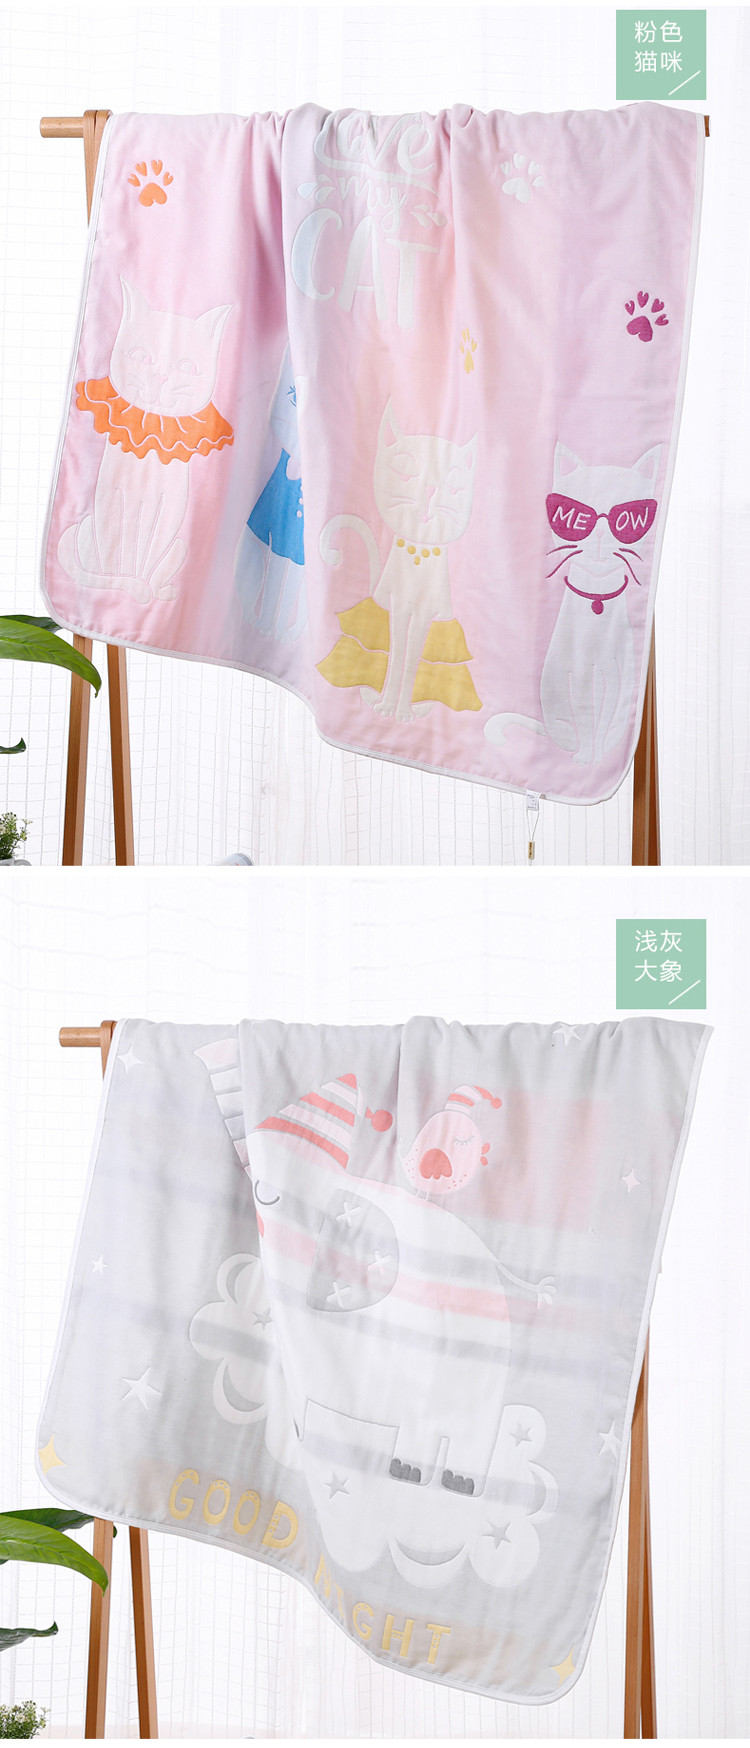 班杰威尔/banjvall 婴儿浴巾纯棉6层纱布浴巾盖毯浴巾